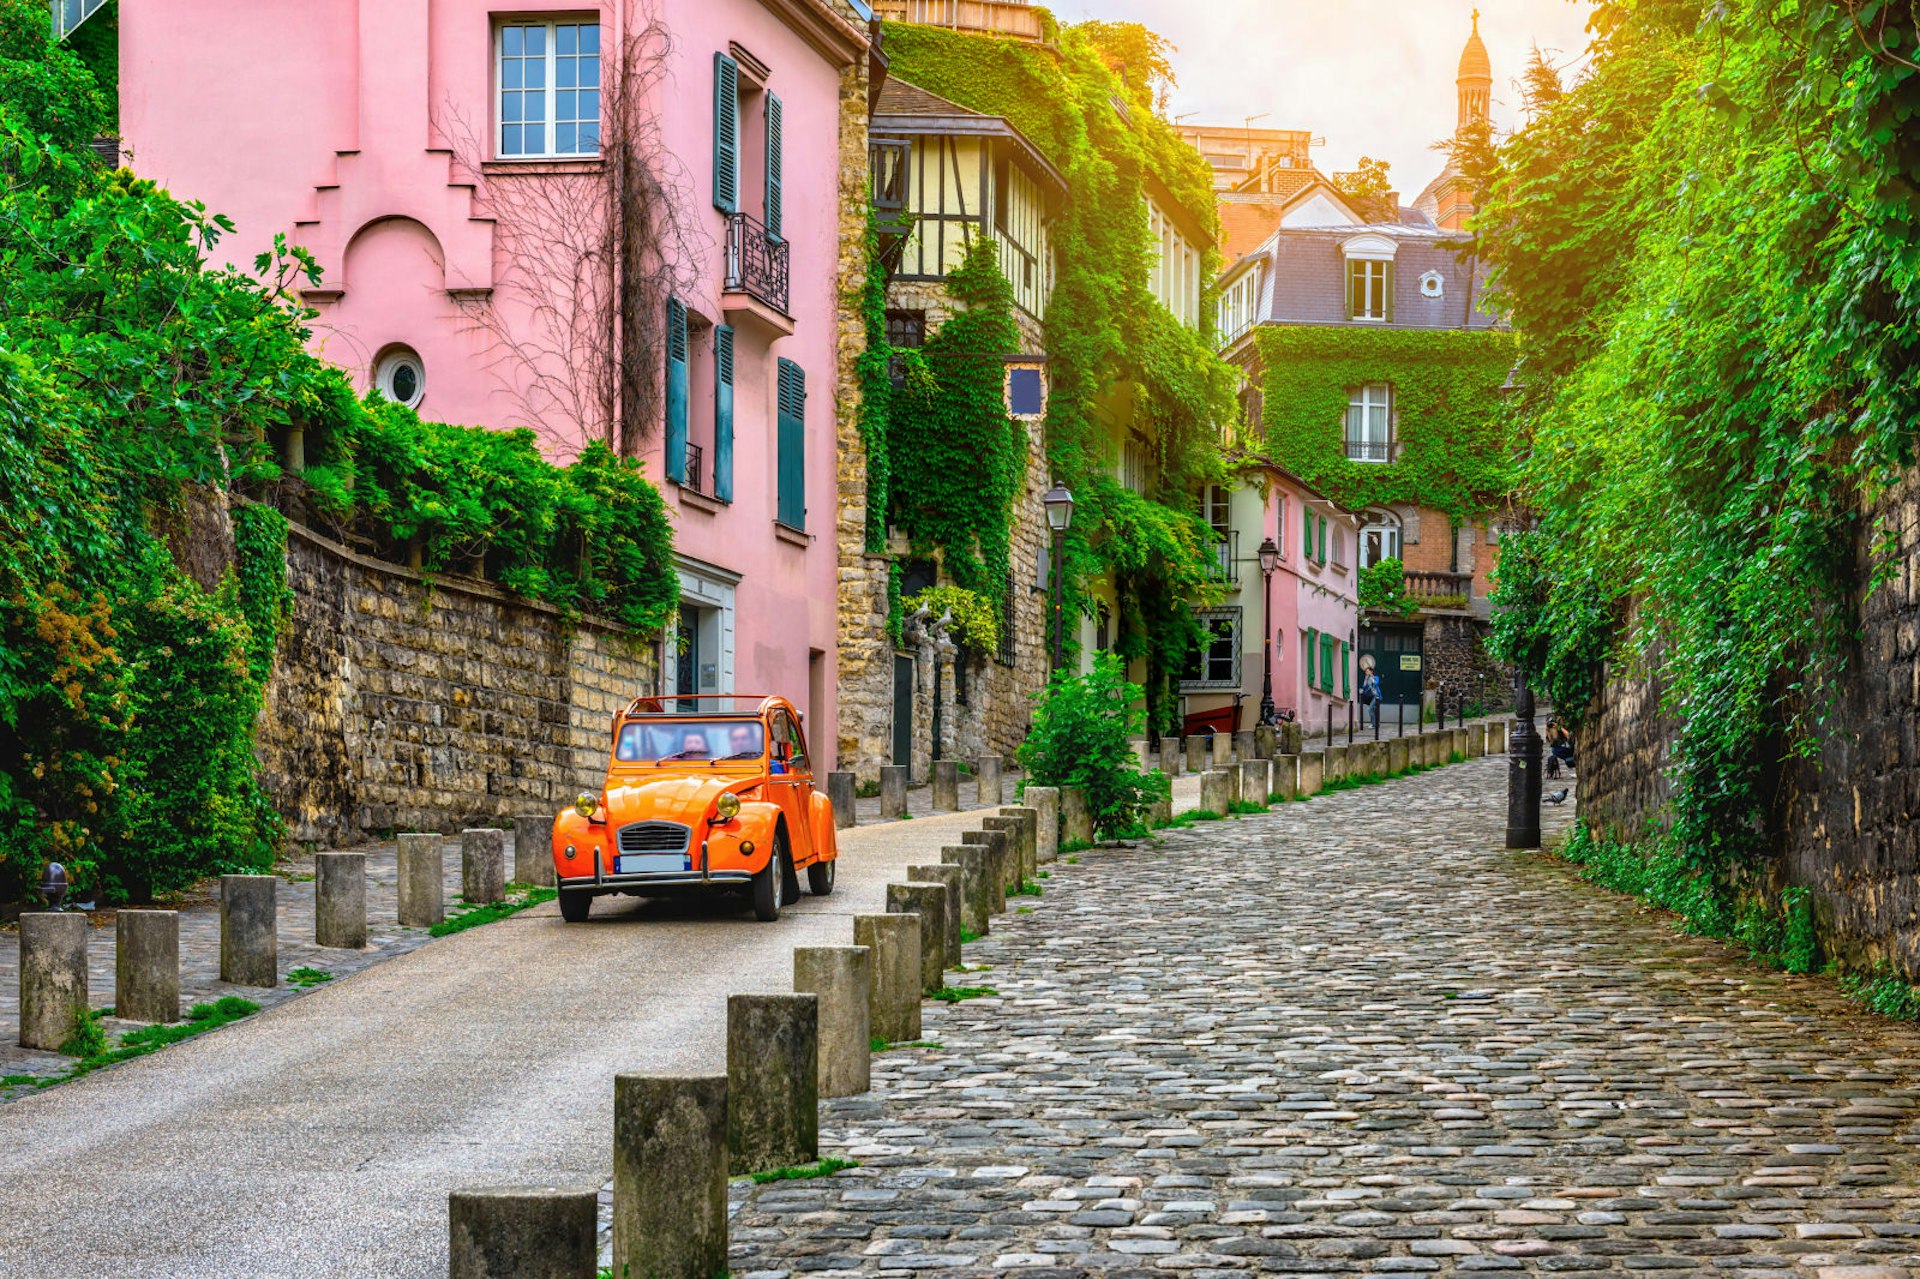 A red Citroen 2CV parked along an old cobbled street near a pink house in Montmartre, Paris © Catarina Belova / Shutterstock